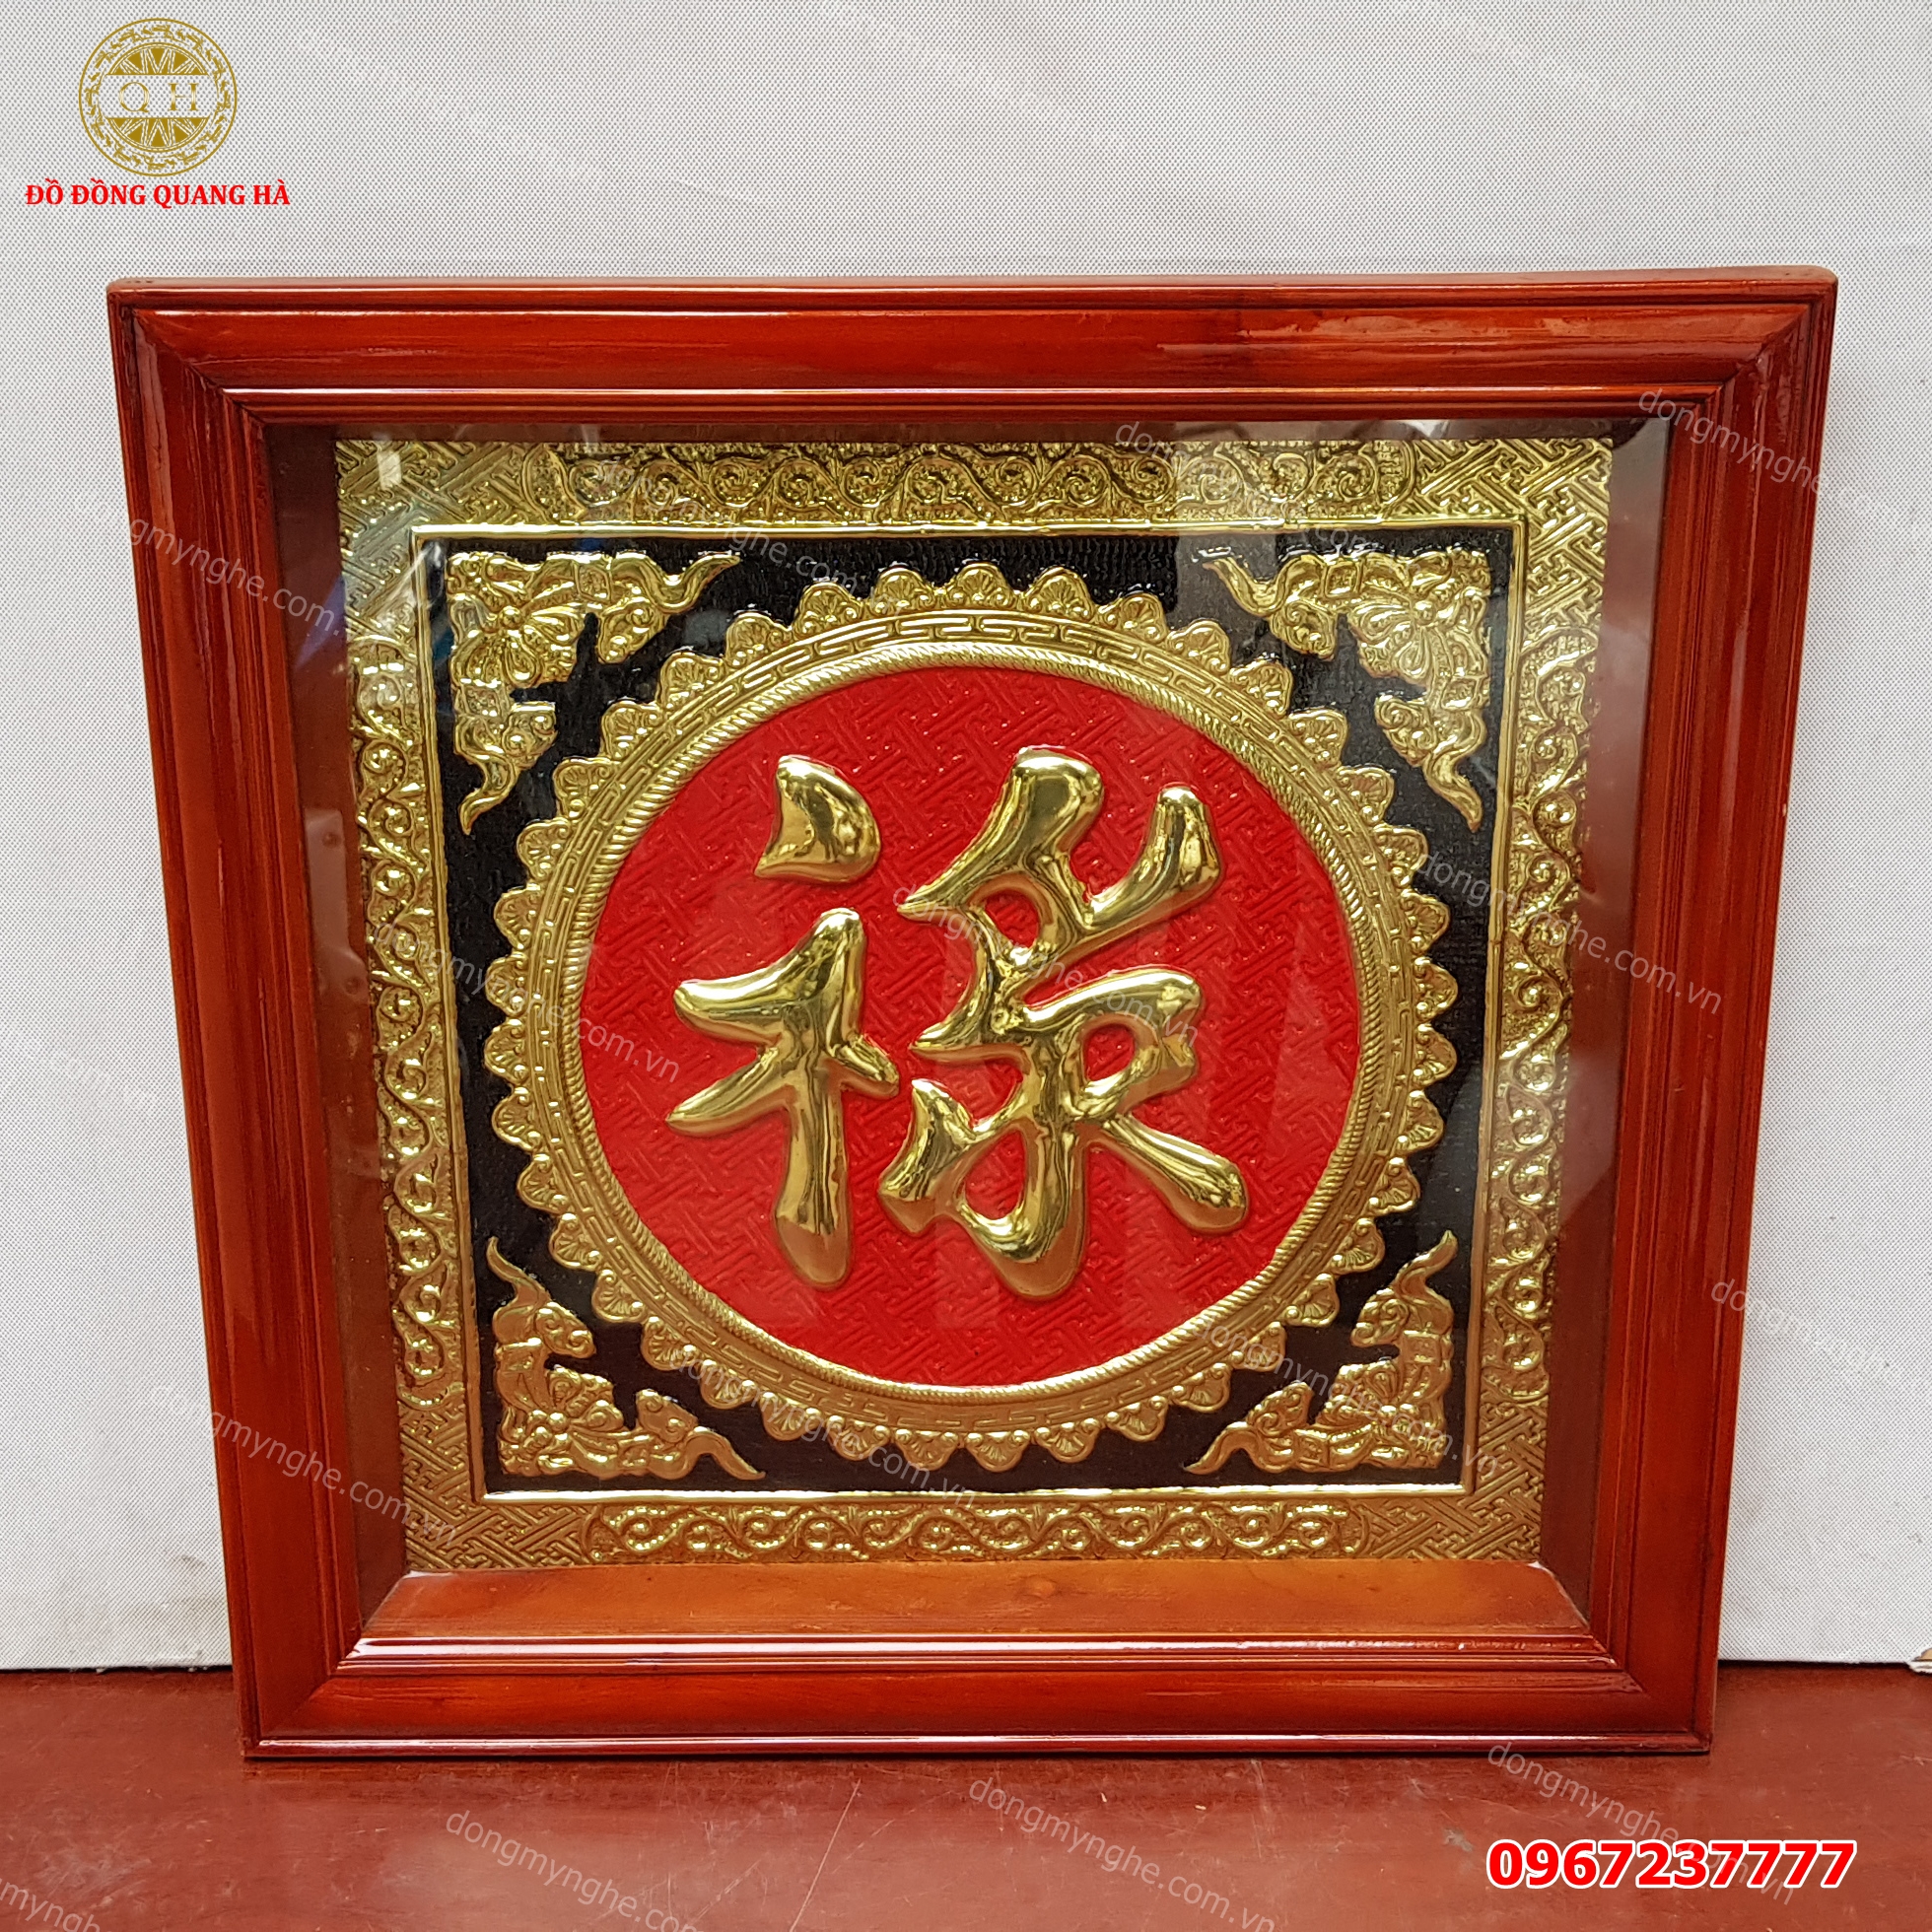 Tranh đồng chữ Lộc khung gỗ tùng 60 x 60cm giá rẻ tại Hà Nội